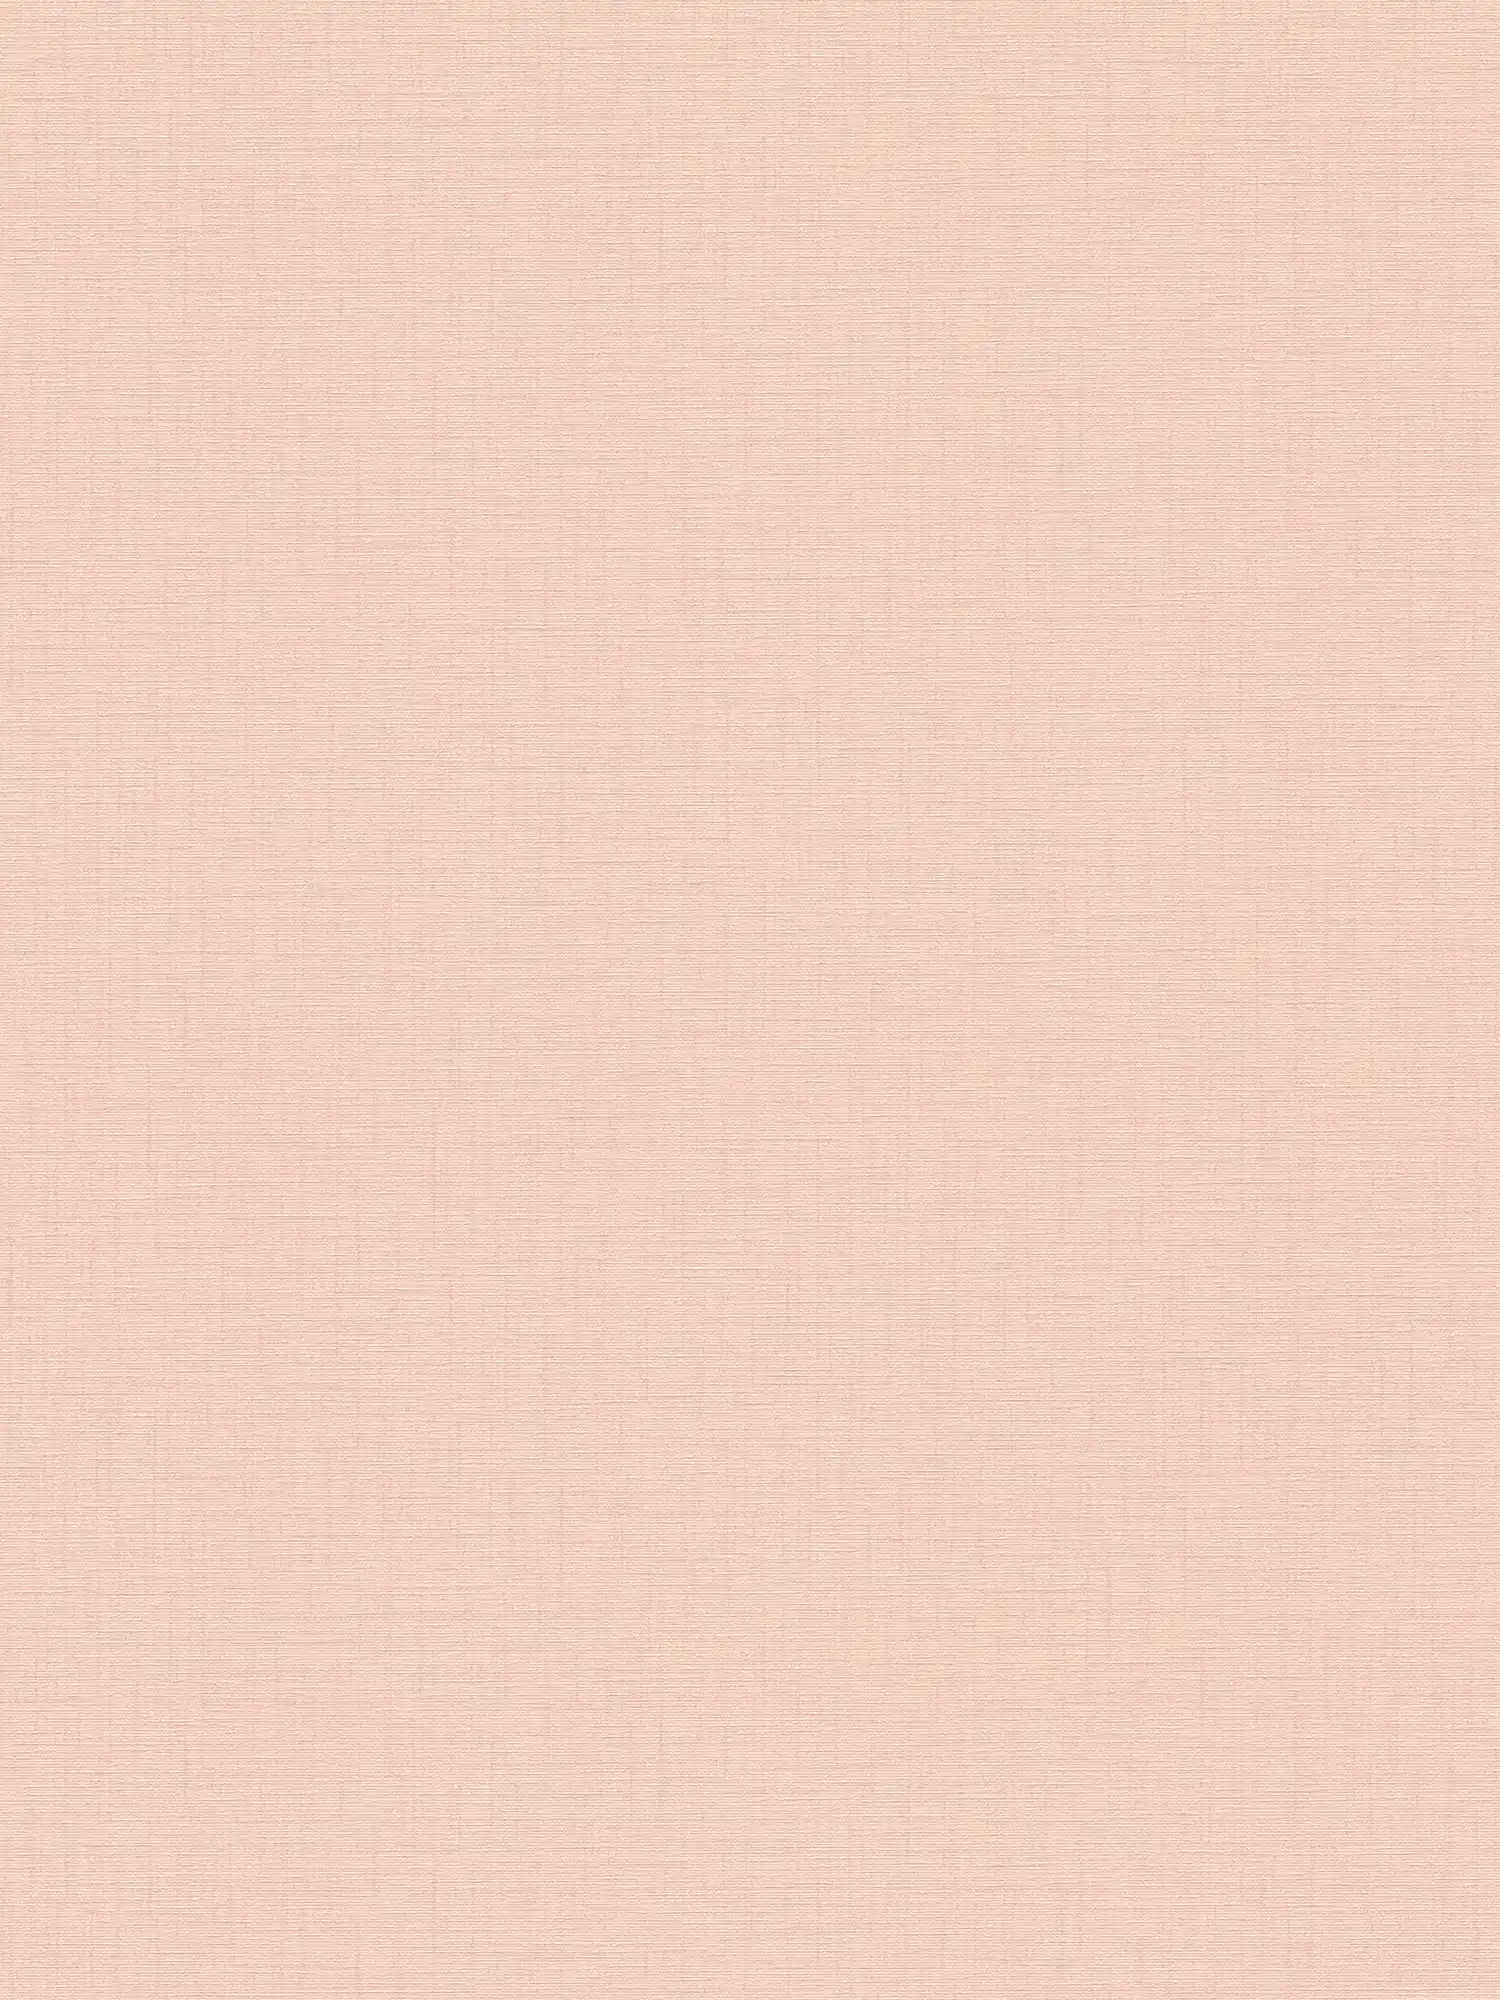 Carta da parati rosa pallido a tinta unita con texture lino - Rosa
